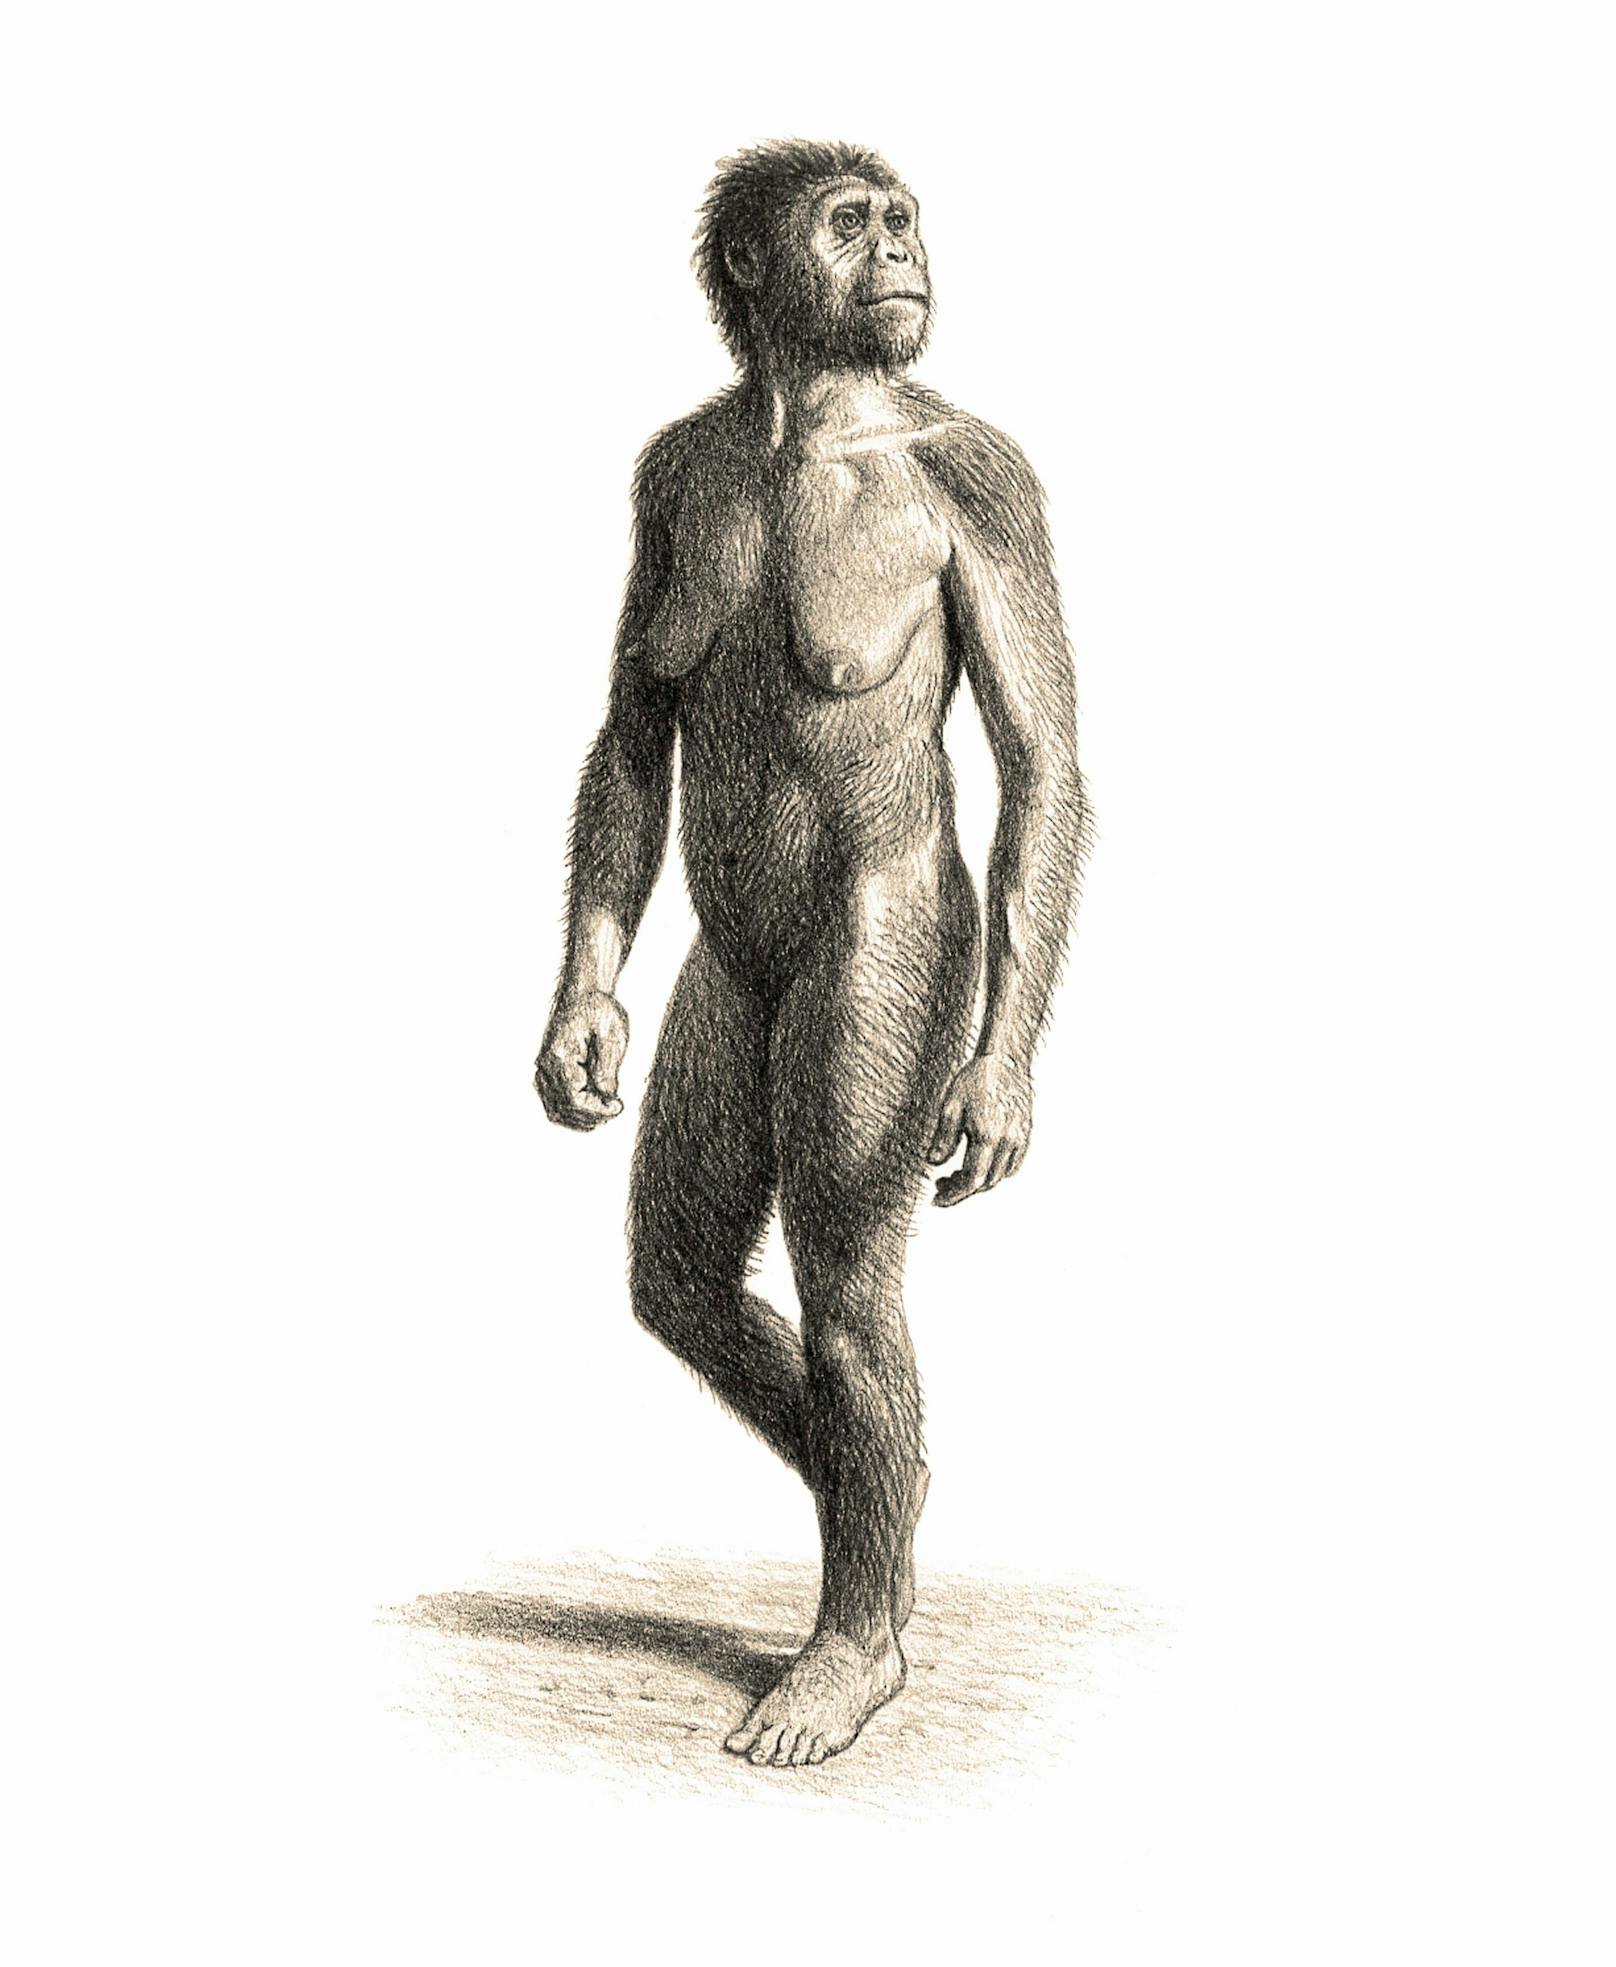 Der Homo habilis hatte ein deutlich kleineres Gehirn.